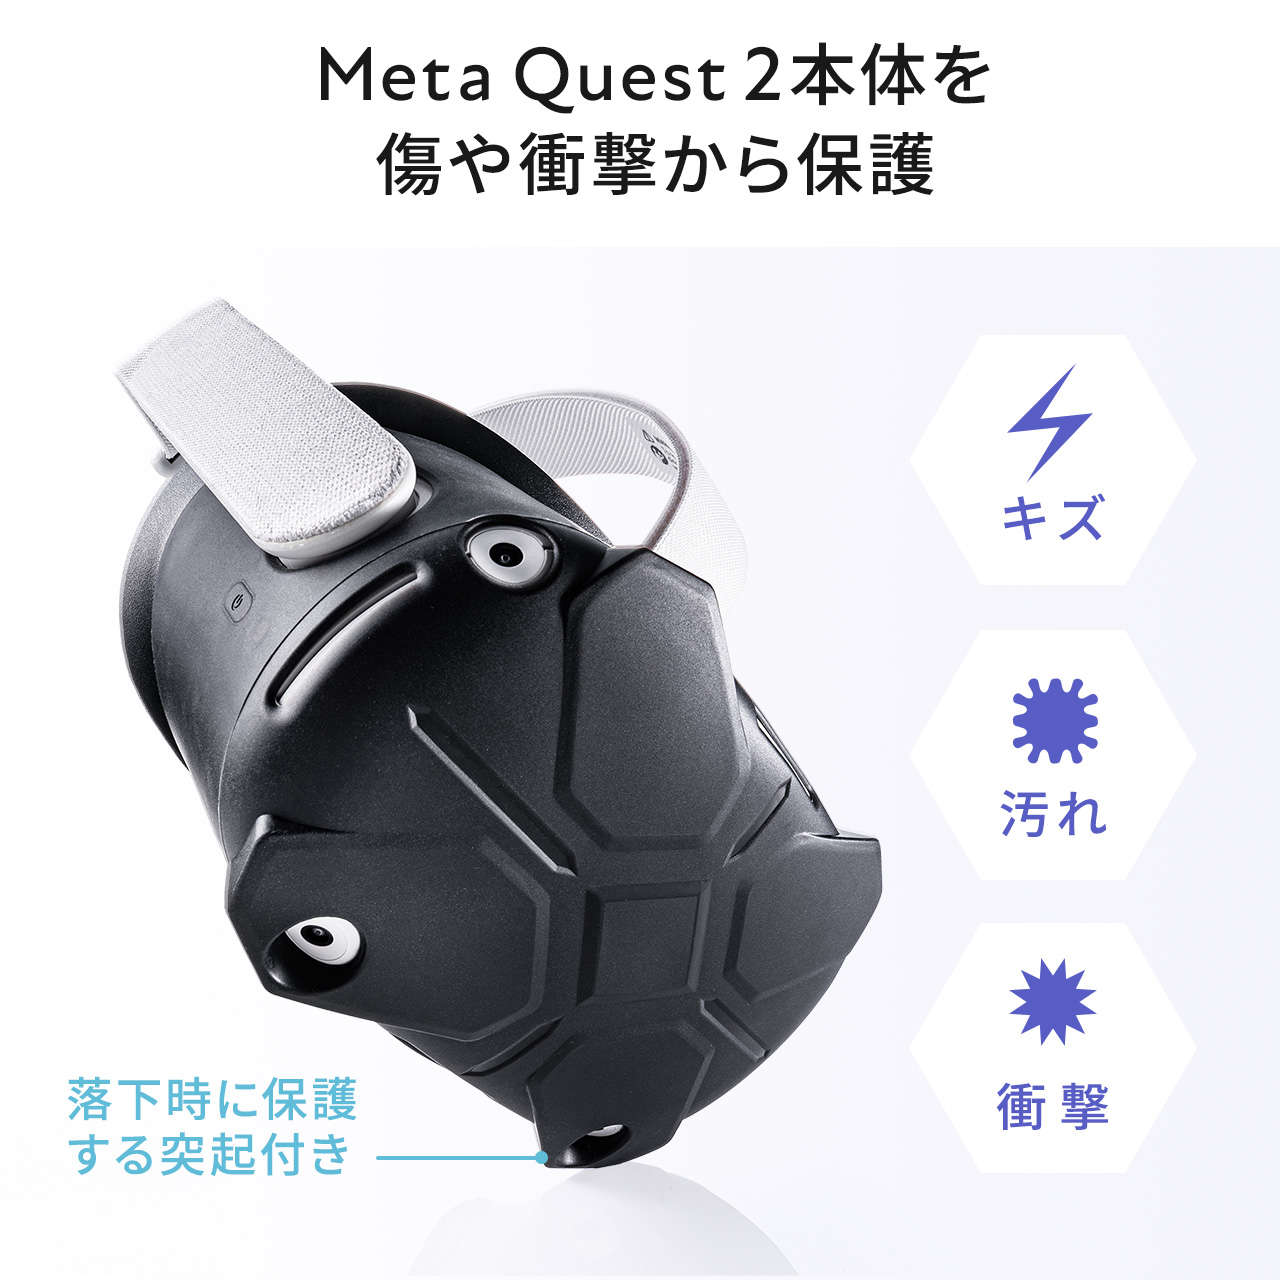 Meta Quest 2 シェルカバー・コントローラーカバーセット シリコン 